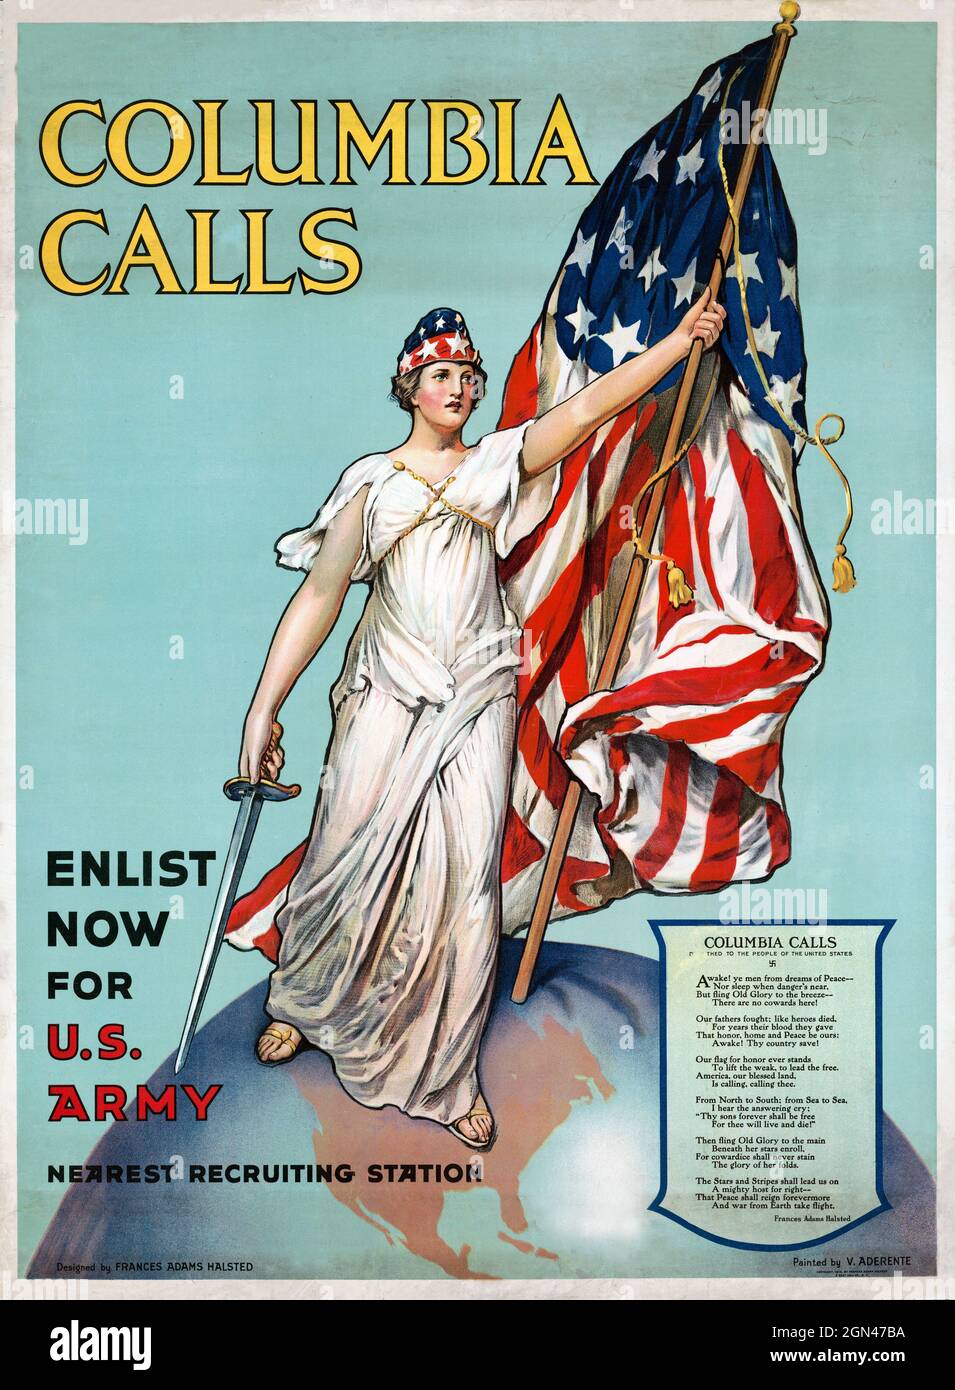 Une affiche publicitaire vintage vers 1916 intitulée Columbia Calls peint par Vincent Aderente montrant Columbia tenant les étoiles et les bandes et la ligne de droite enlist maintenant pour l'armée américaine Banque D'Images